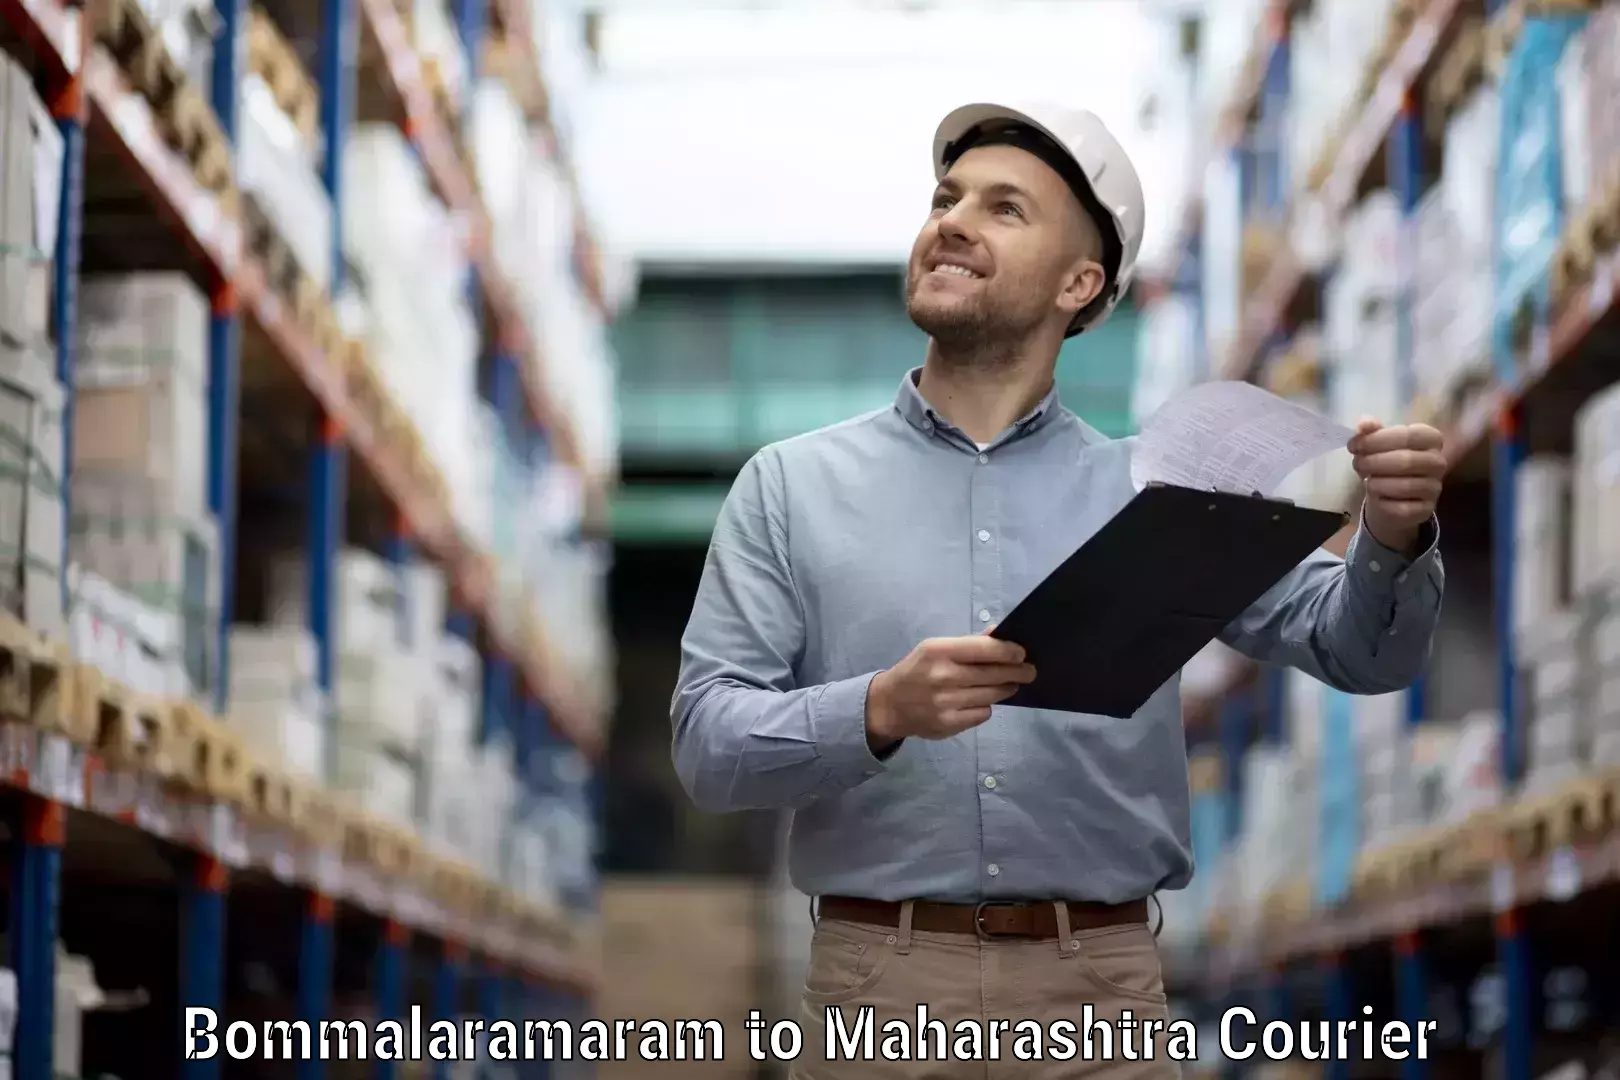 High-capacity parcel service Bommalaramaram to Wardha